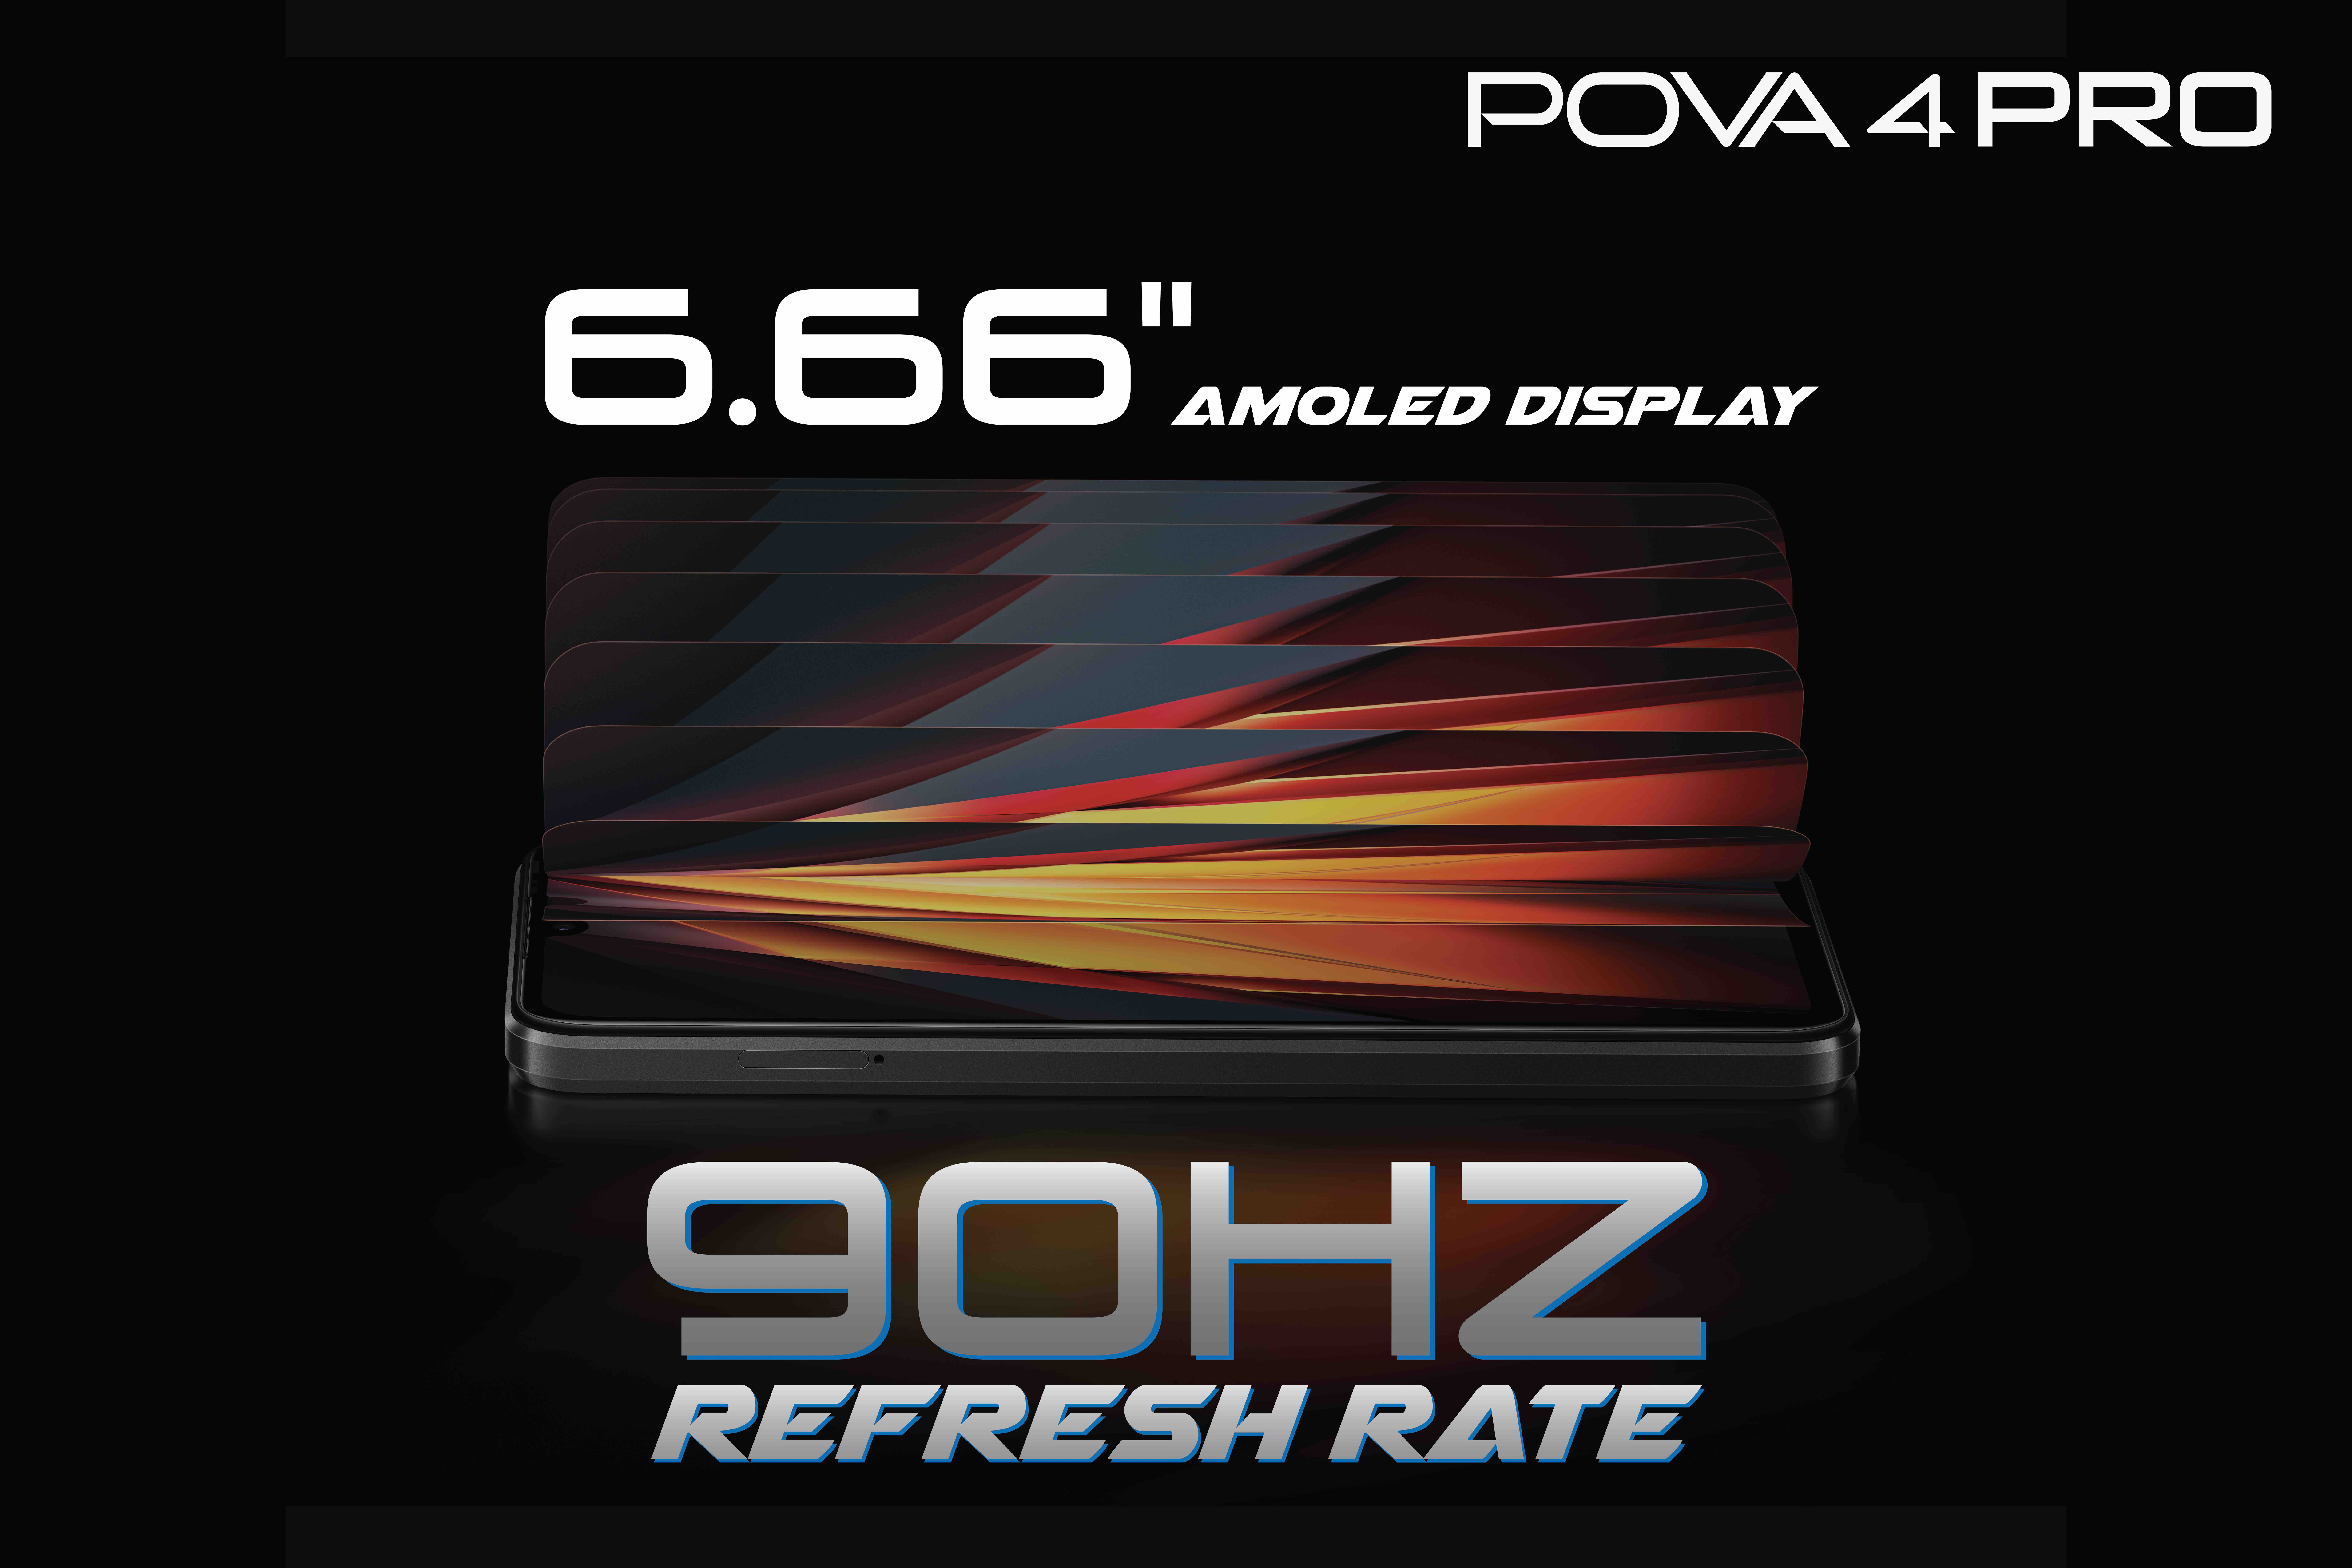 3.POVA 4 Pro ประสบการณ์เล่าเกมไม่มีใครเทียบ | POVA 4 Pro | POVA 4 Pro สมาร์ทโฟนล่าสุดจาก TECNO ดีไซน์อัปเกรดทรงพลัง